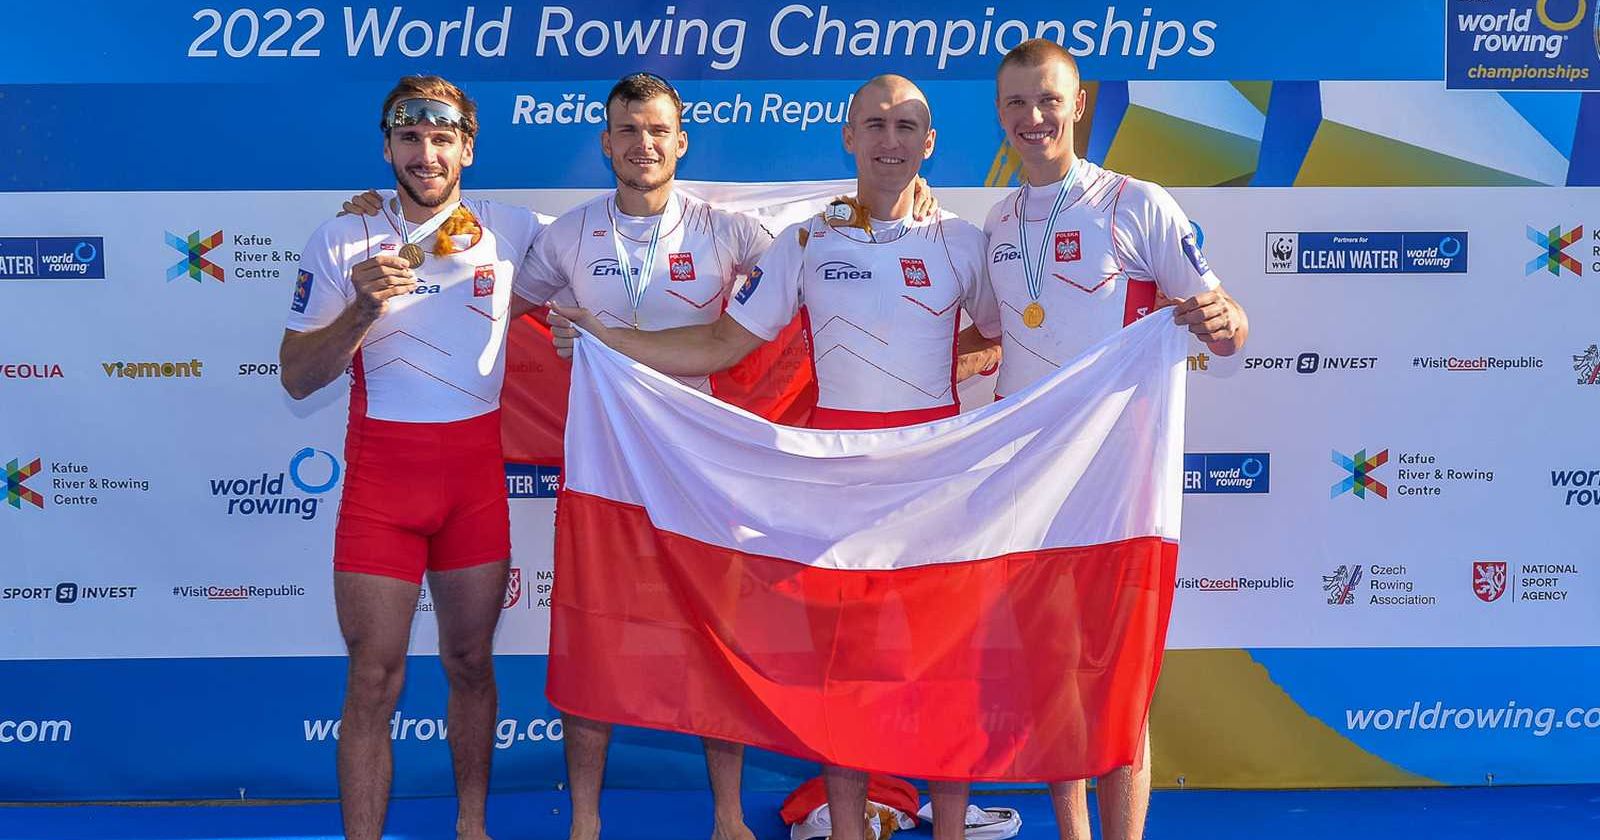 Złoci medaliści mistrzostw świata 2022 Reprezentanci Polski ze złotymi medalami i flagą Polski pozują na ściance z napisem "2022 World Rowing Championships"